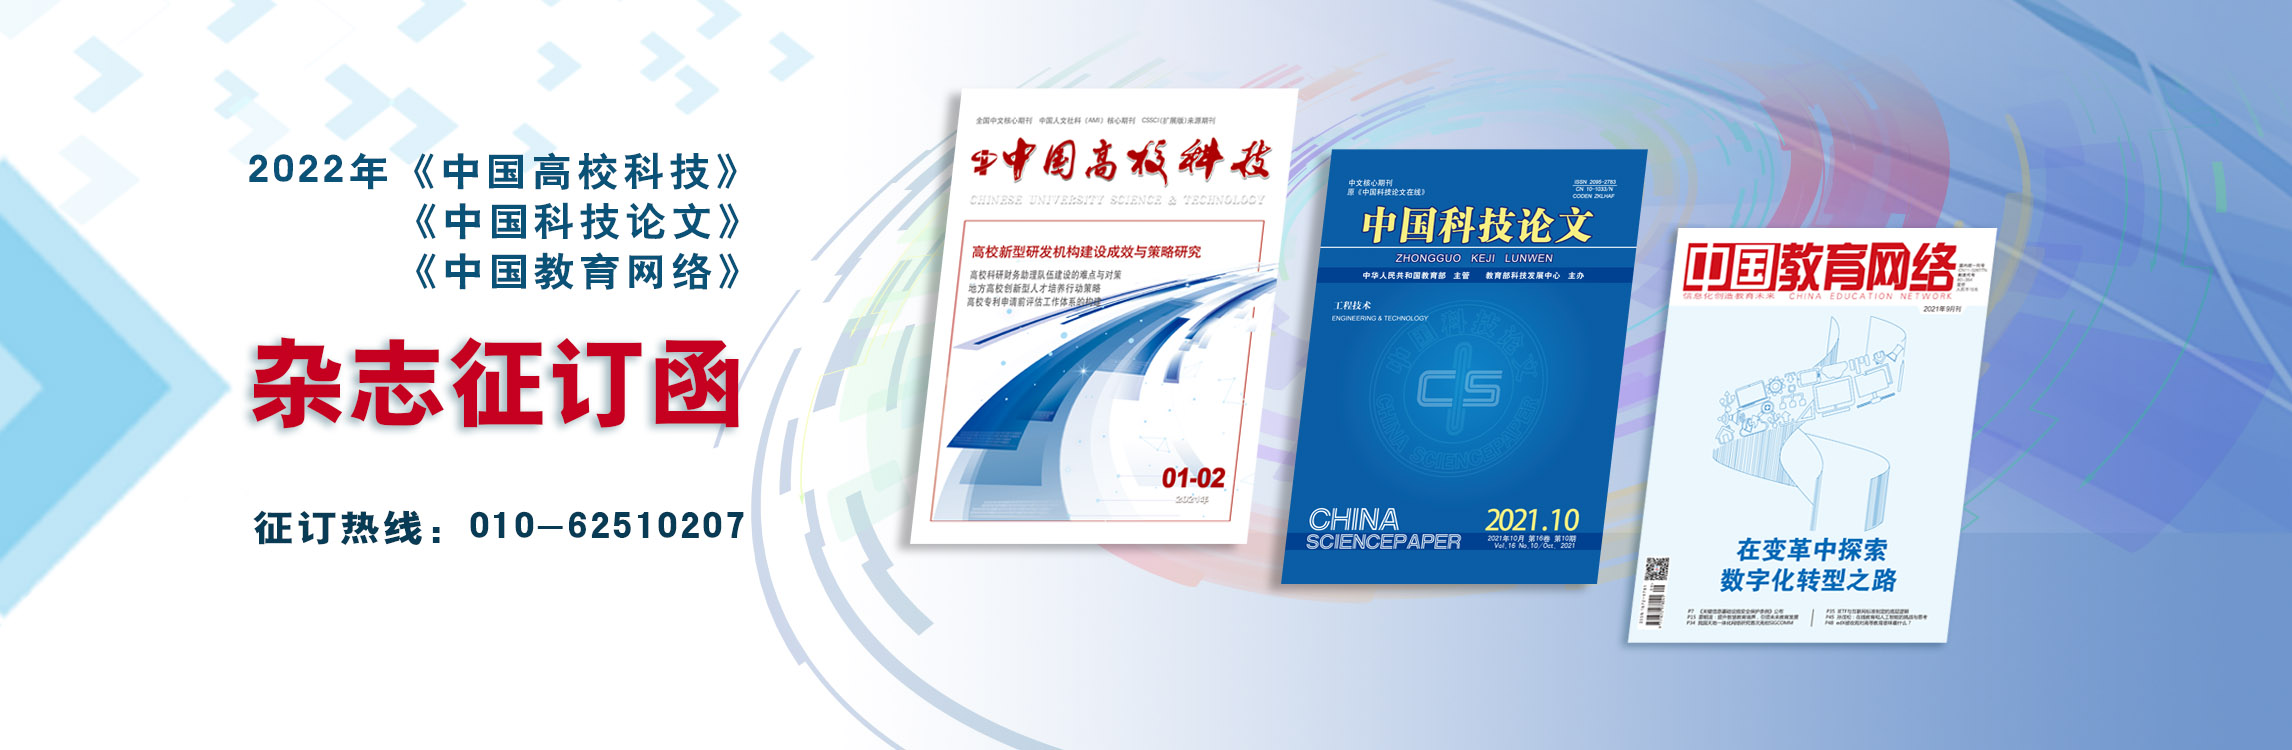 2022年《中国高校科技》《中国科技论文》 《中国教育网络》杂志征订函